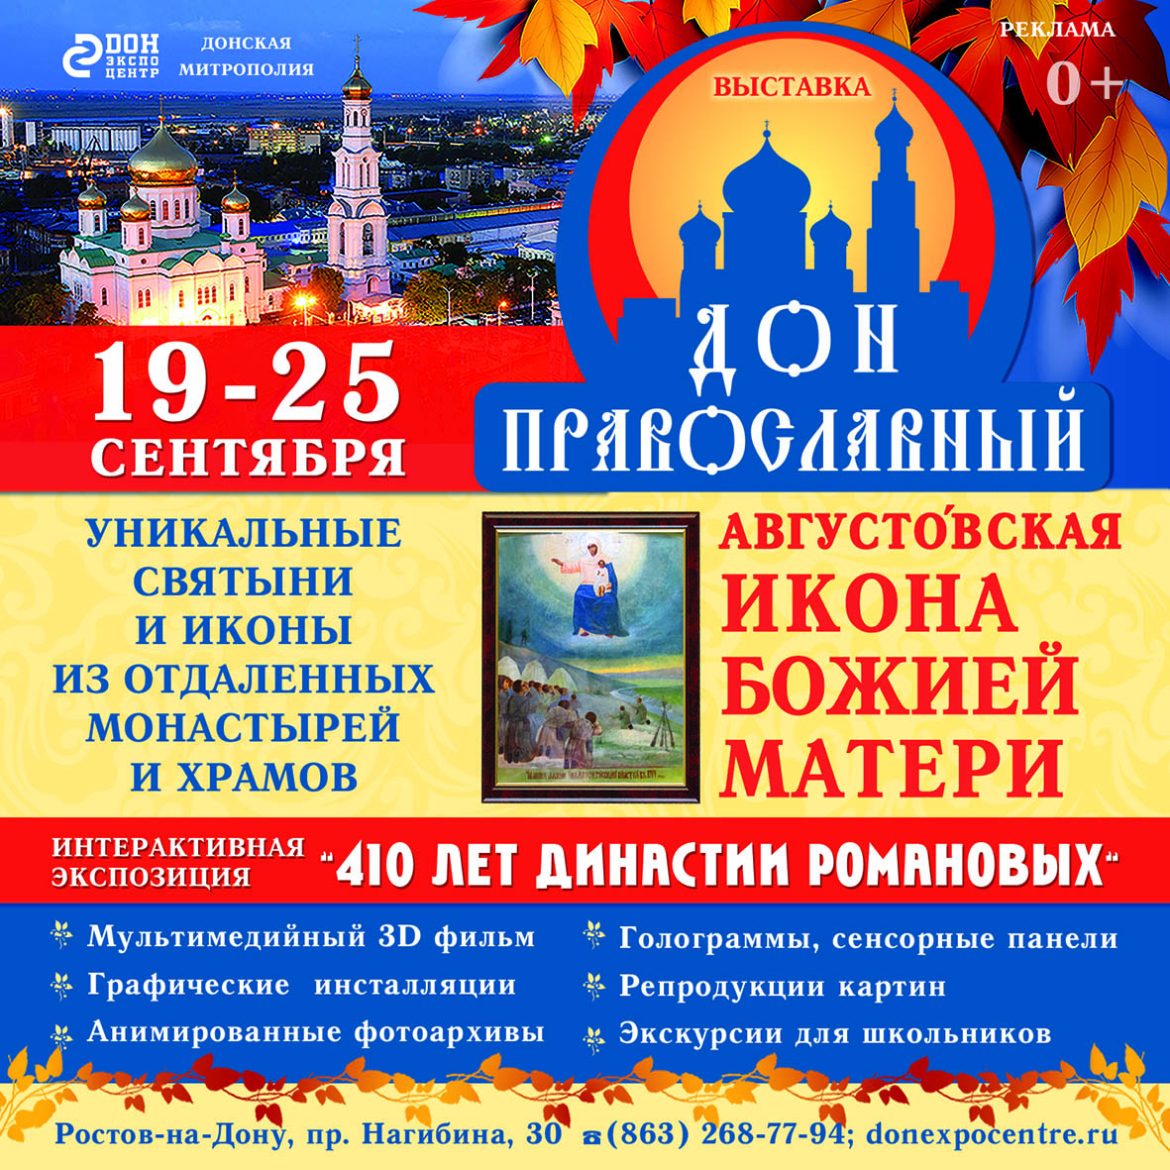 С 19 по 25 сентября на площадке «ДонЭкспоцентра» пройдёт ежегодная выставка «Дон Православный» 